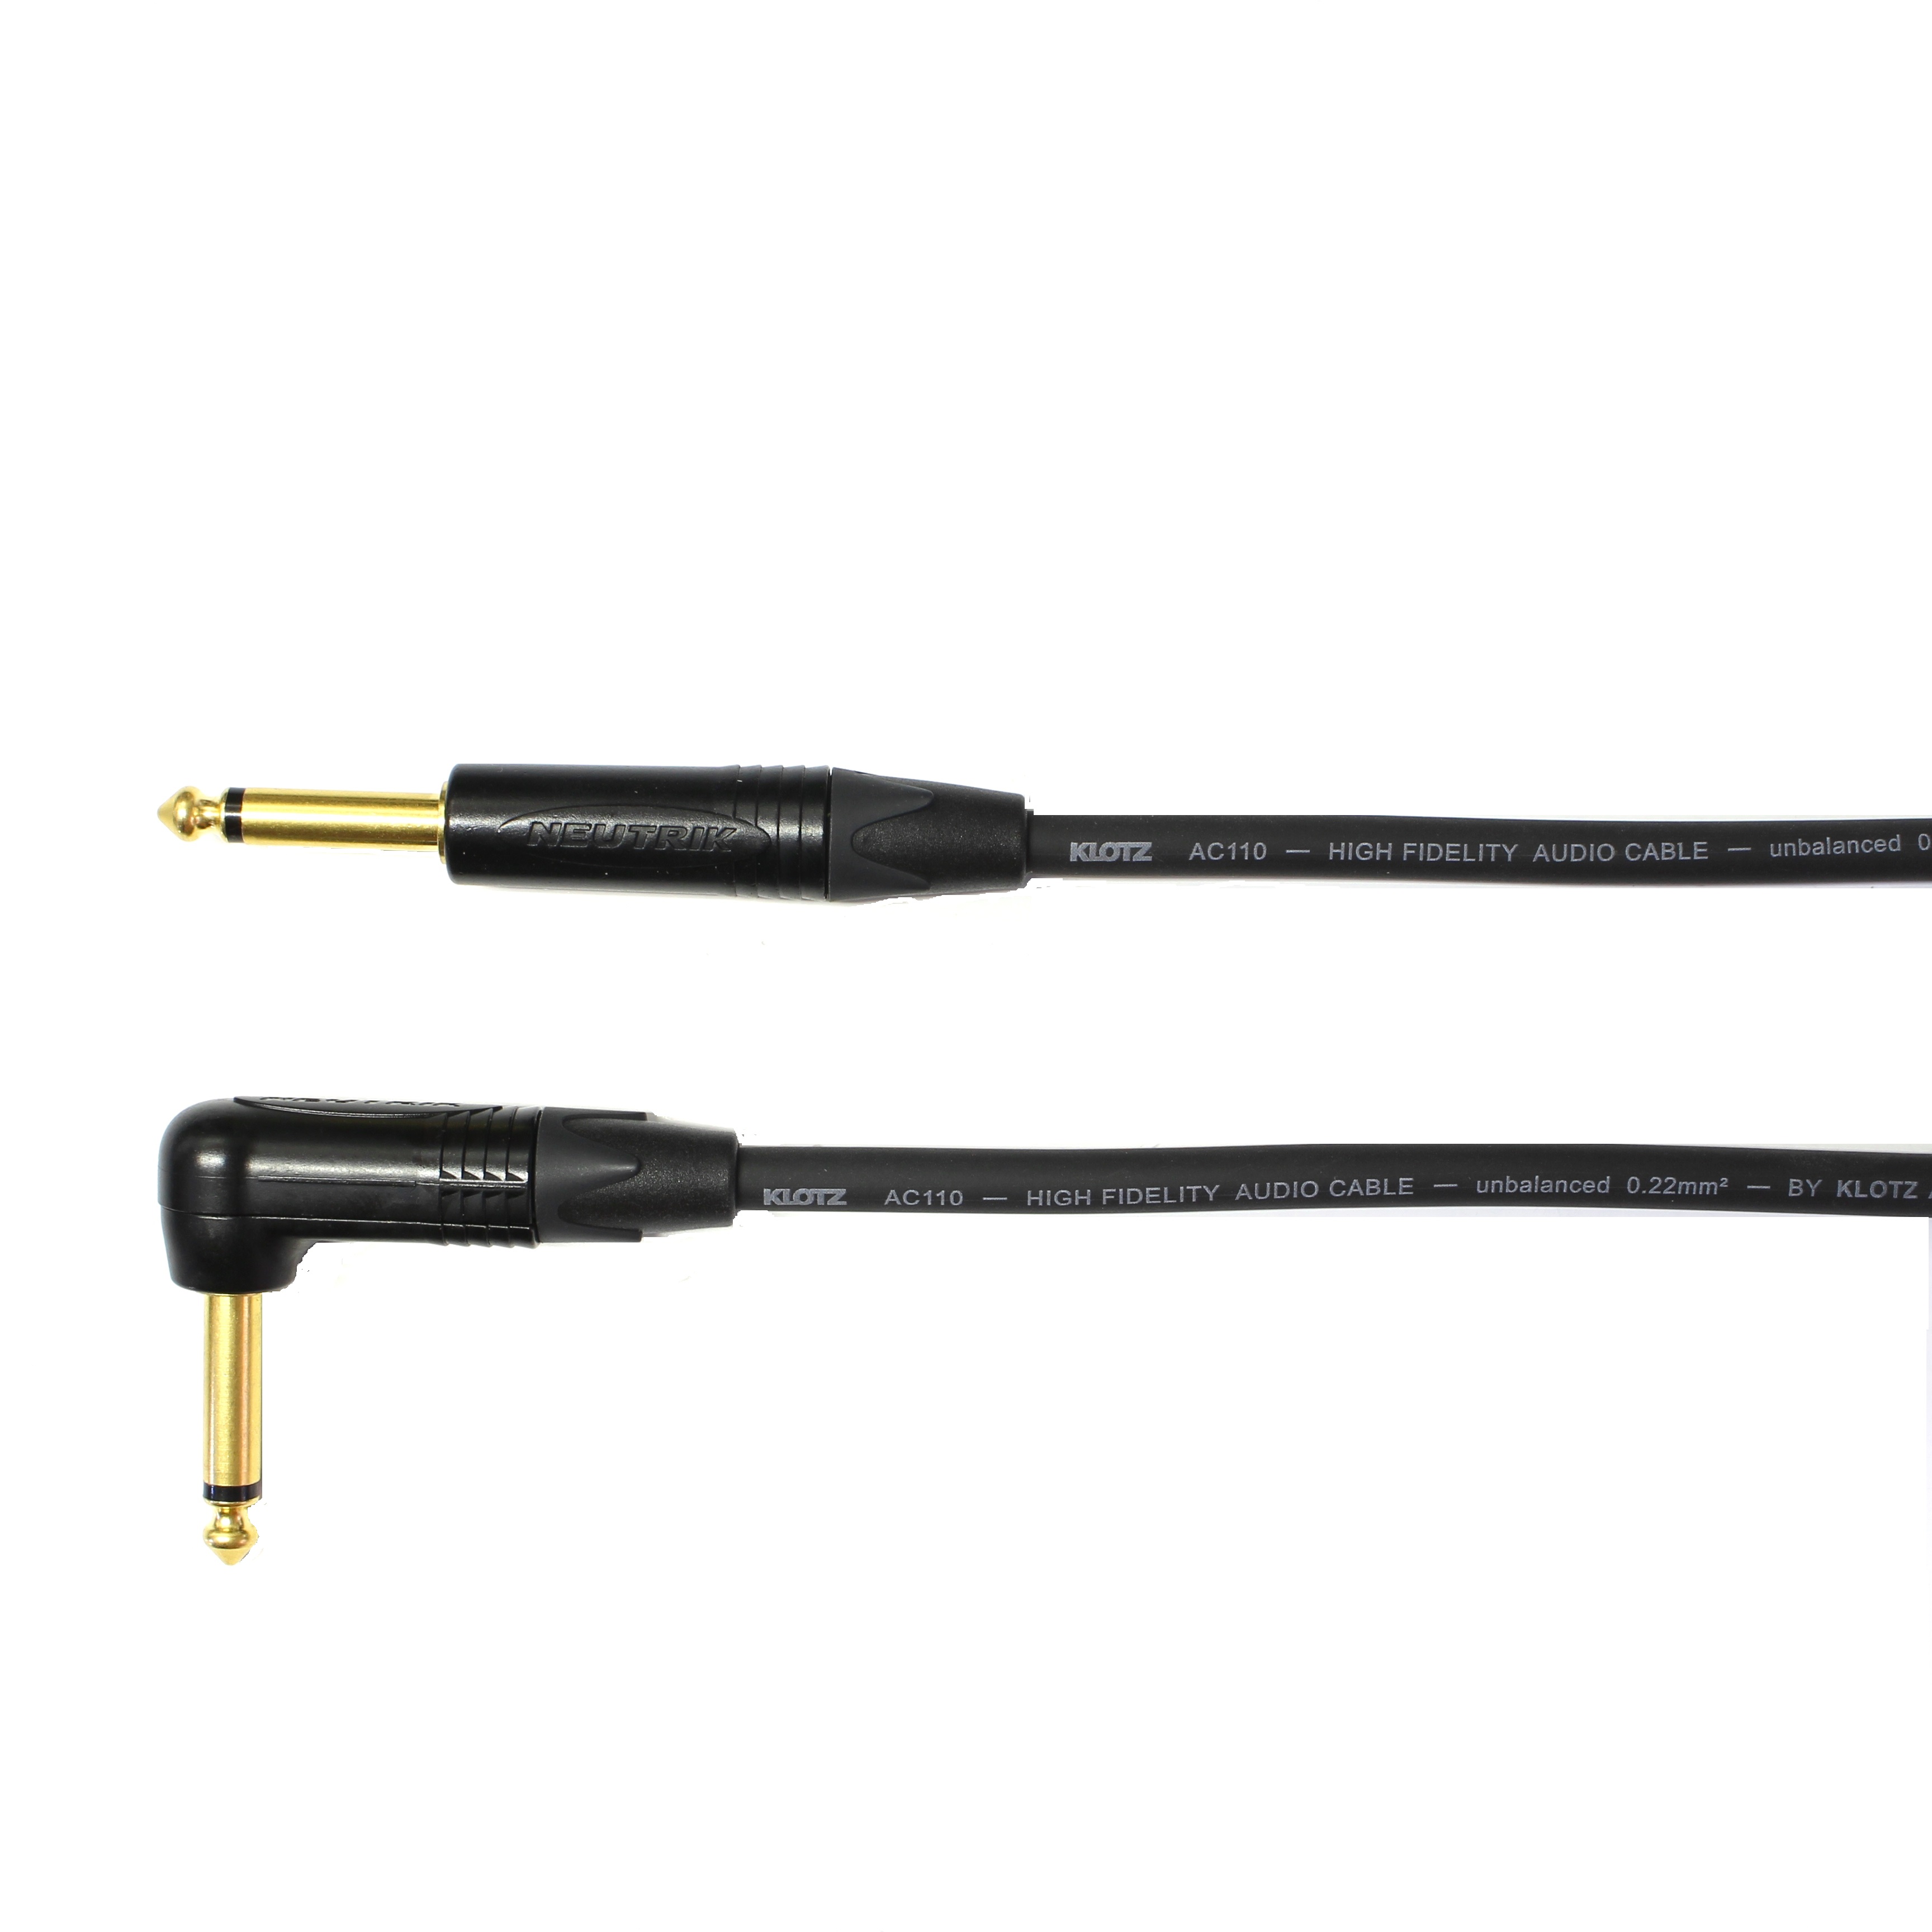 Kytarový kabel Jack 6,3 mono přímý/ Jack 6,3 mono úhlový, 75 cm, AC110